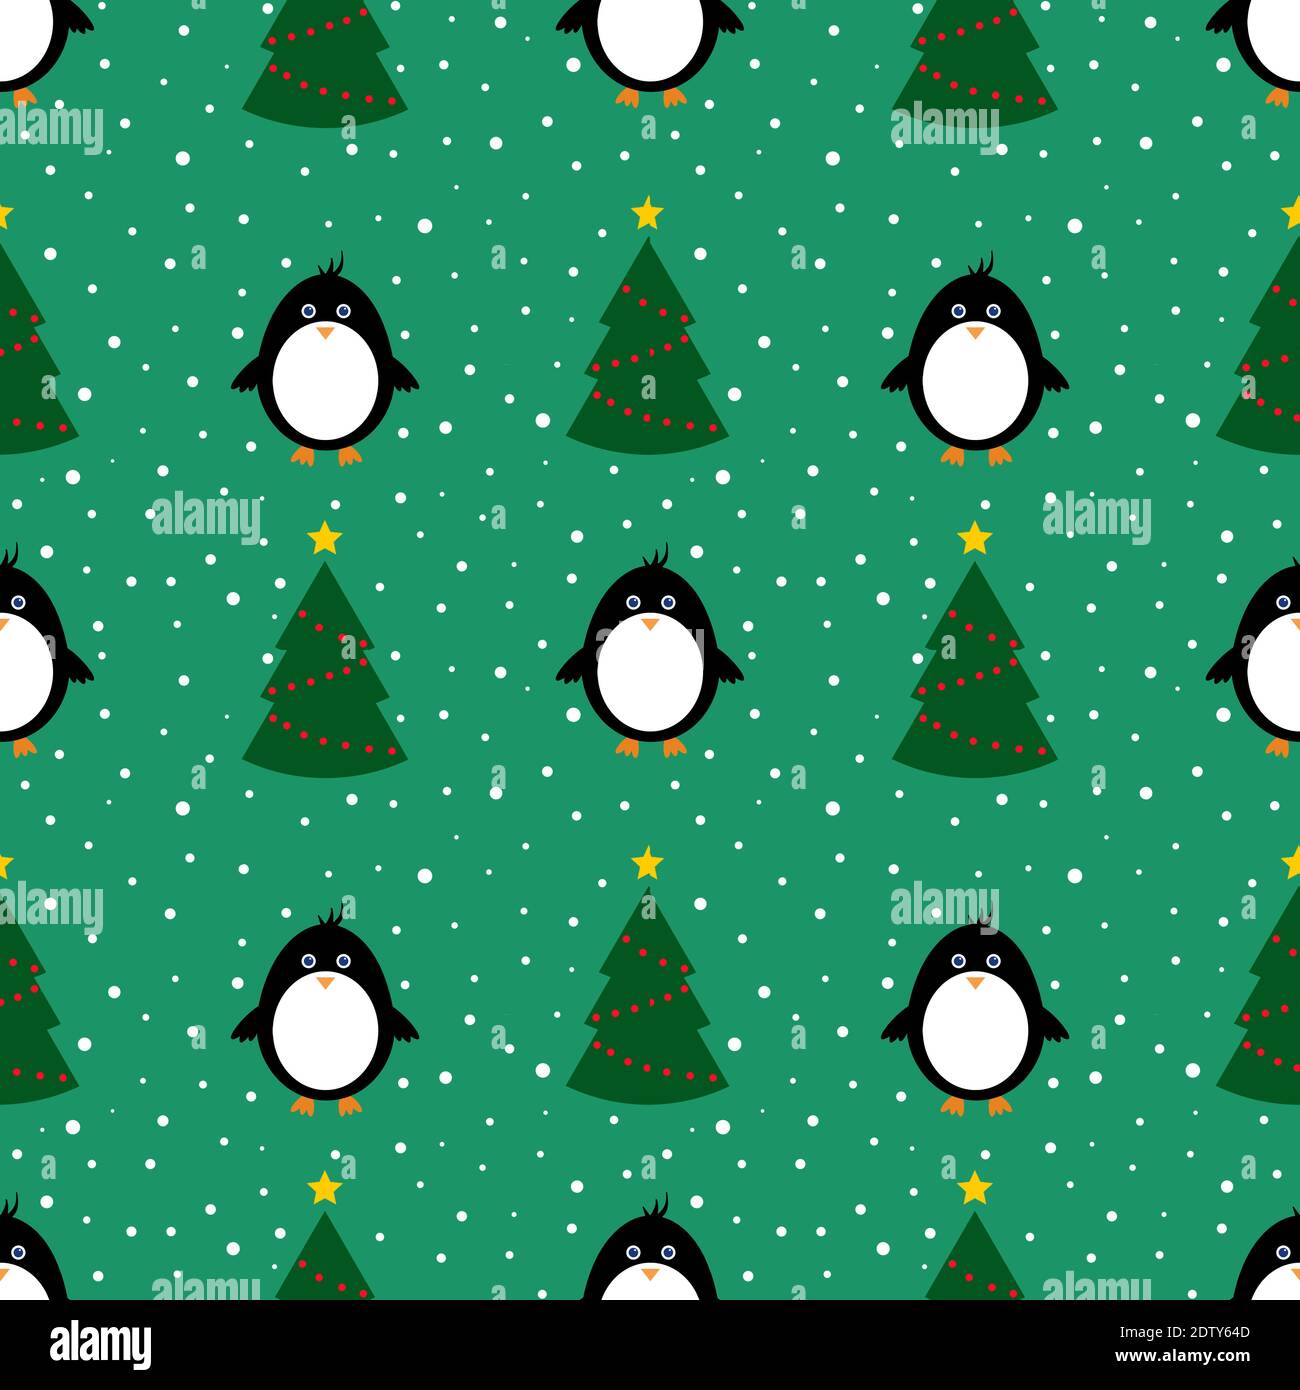 Penguin and Christmas Tree sẽ giúp bạn trải nghiệm những khoảnh khắc đầy niềm vui và hạnh phúc trong mùa giáng sinh này. Với các hình ảnh đáng yêu của chúng tôi, bạn sẽ được tham gia vào một cuộc phiêu lưu kỳ thú của Penguin trên những cành cây giáng sinh đầy sáng tạo. Hãy truy cập vào ảnh của chúng tôi và khám phá những câu chuyện đầy màu sắc của Penguin và chú rể cây giáng sinh nhé!